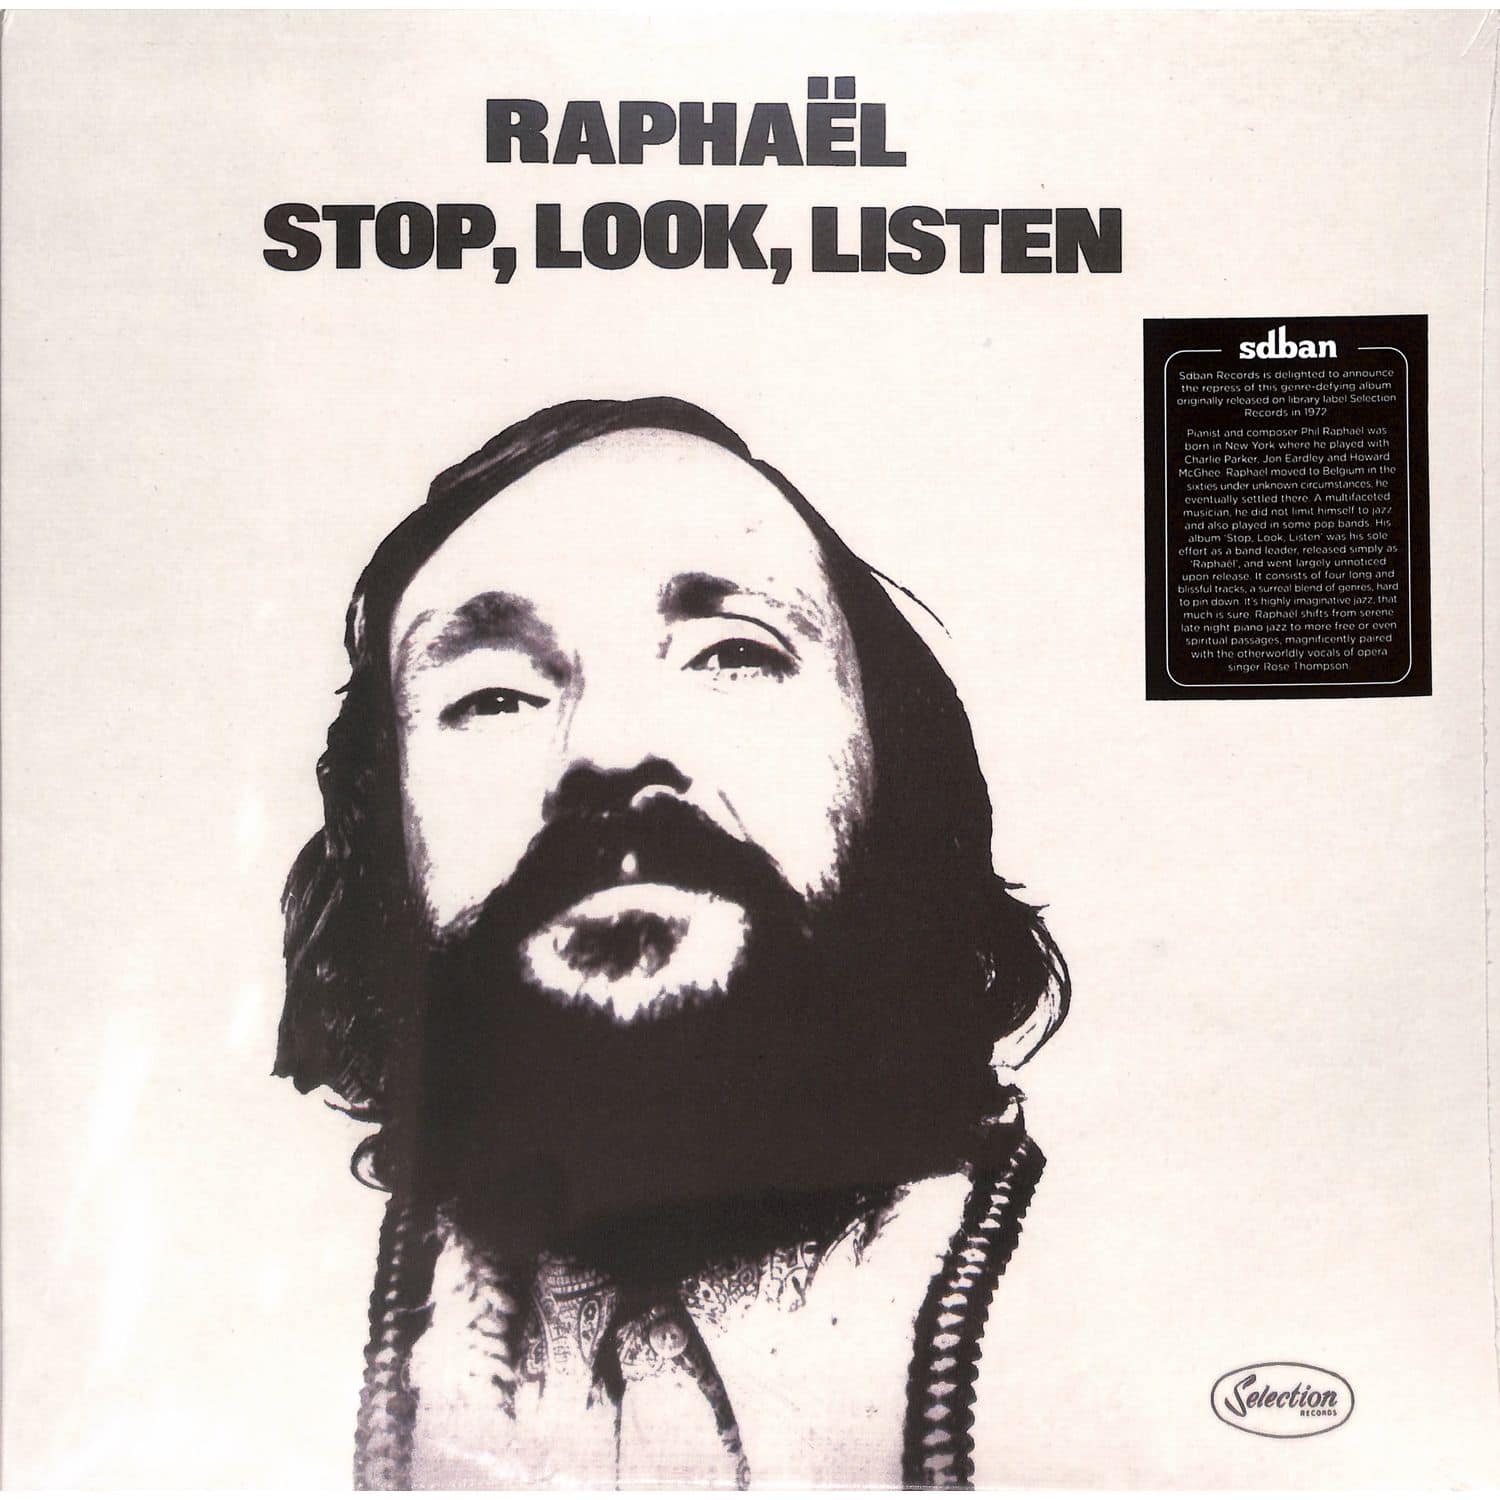 Raphael - STOP, LOOK, LISTEN